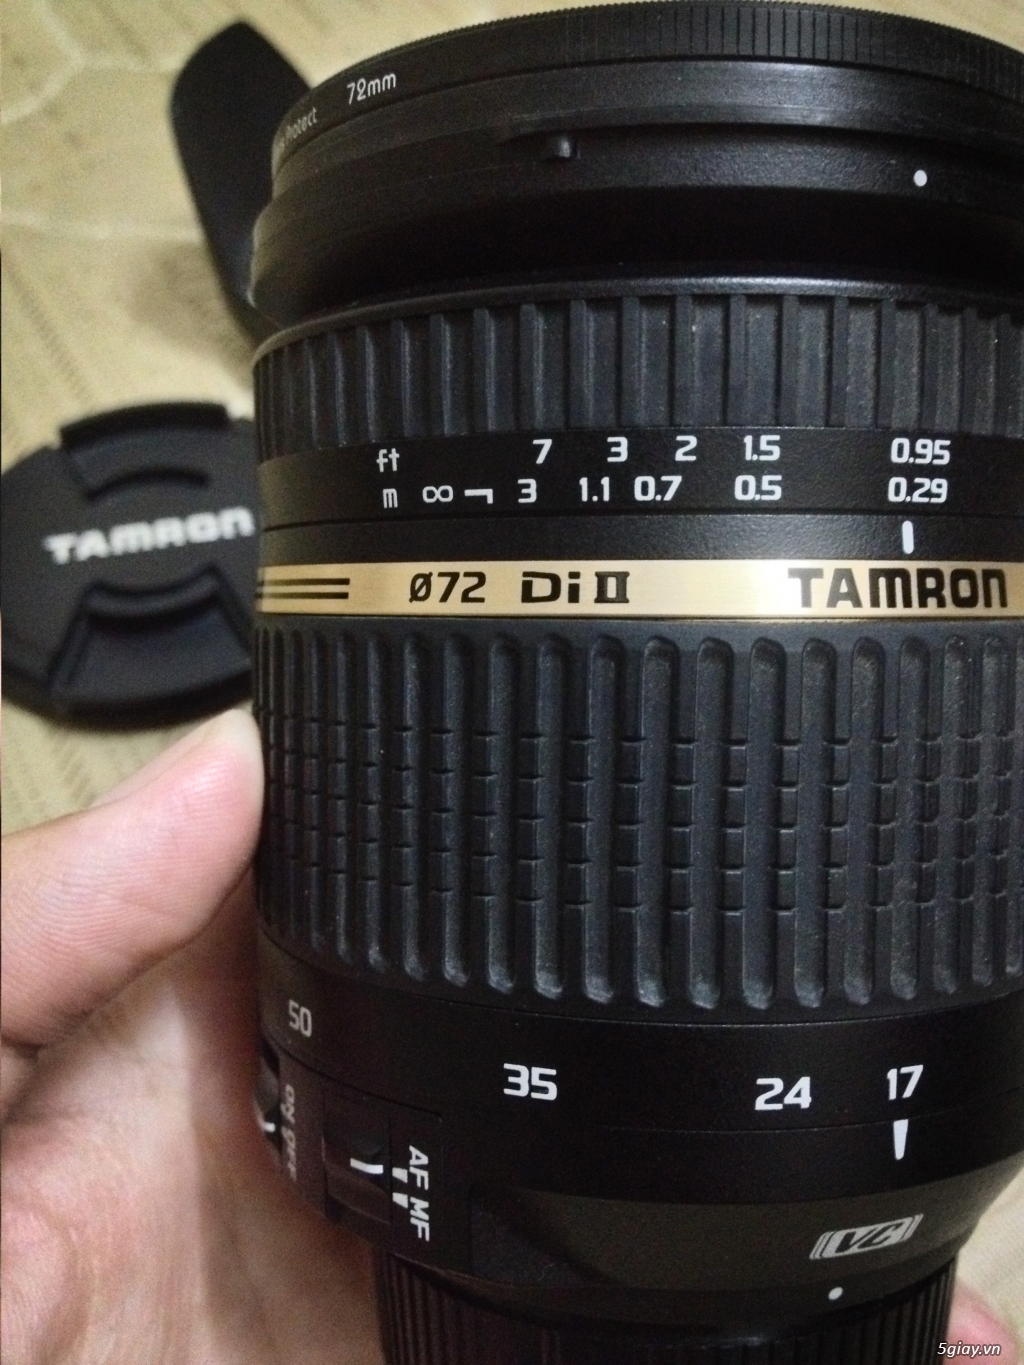 Nikon D300, lens Tamron 17-50 2.8 Di II, lens 18-55mm f/3.5-5.6G, Grip Nikon MB-D10 - 11